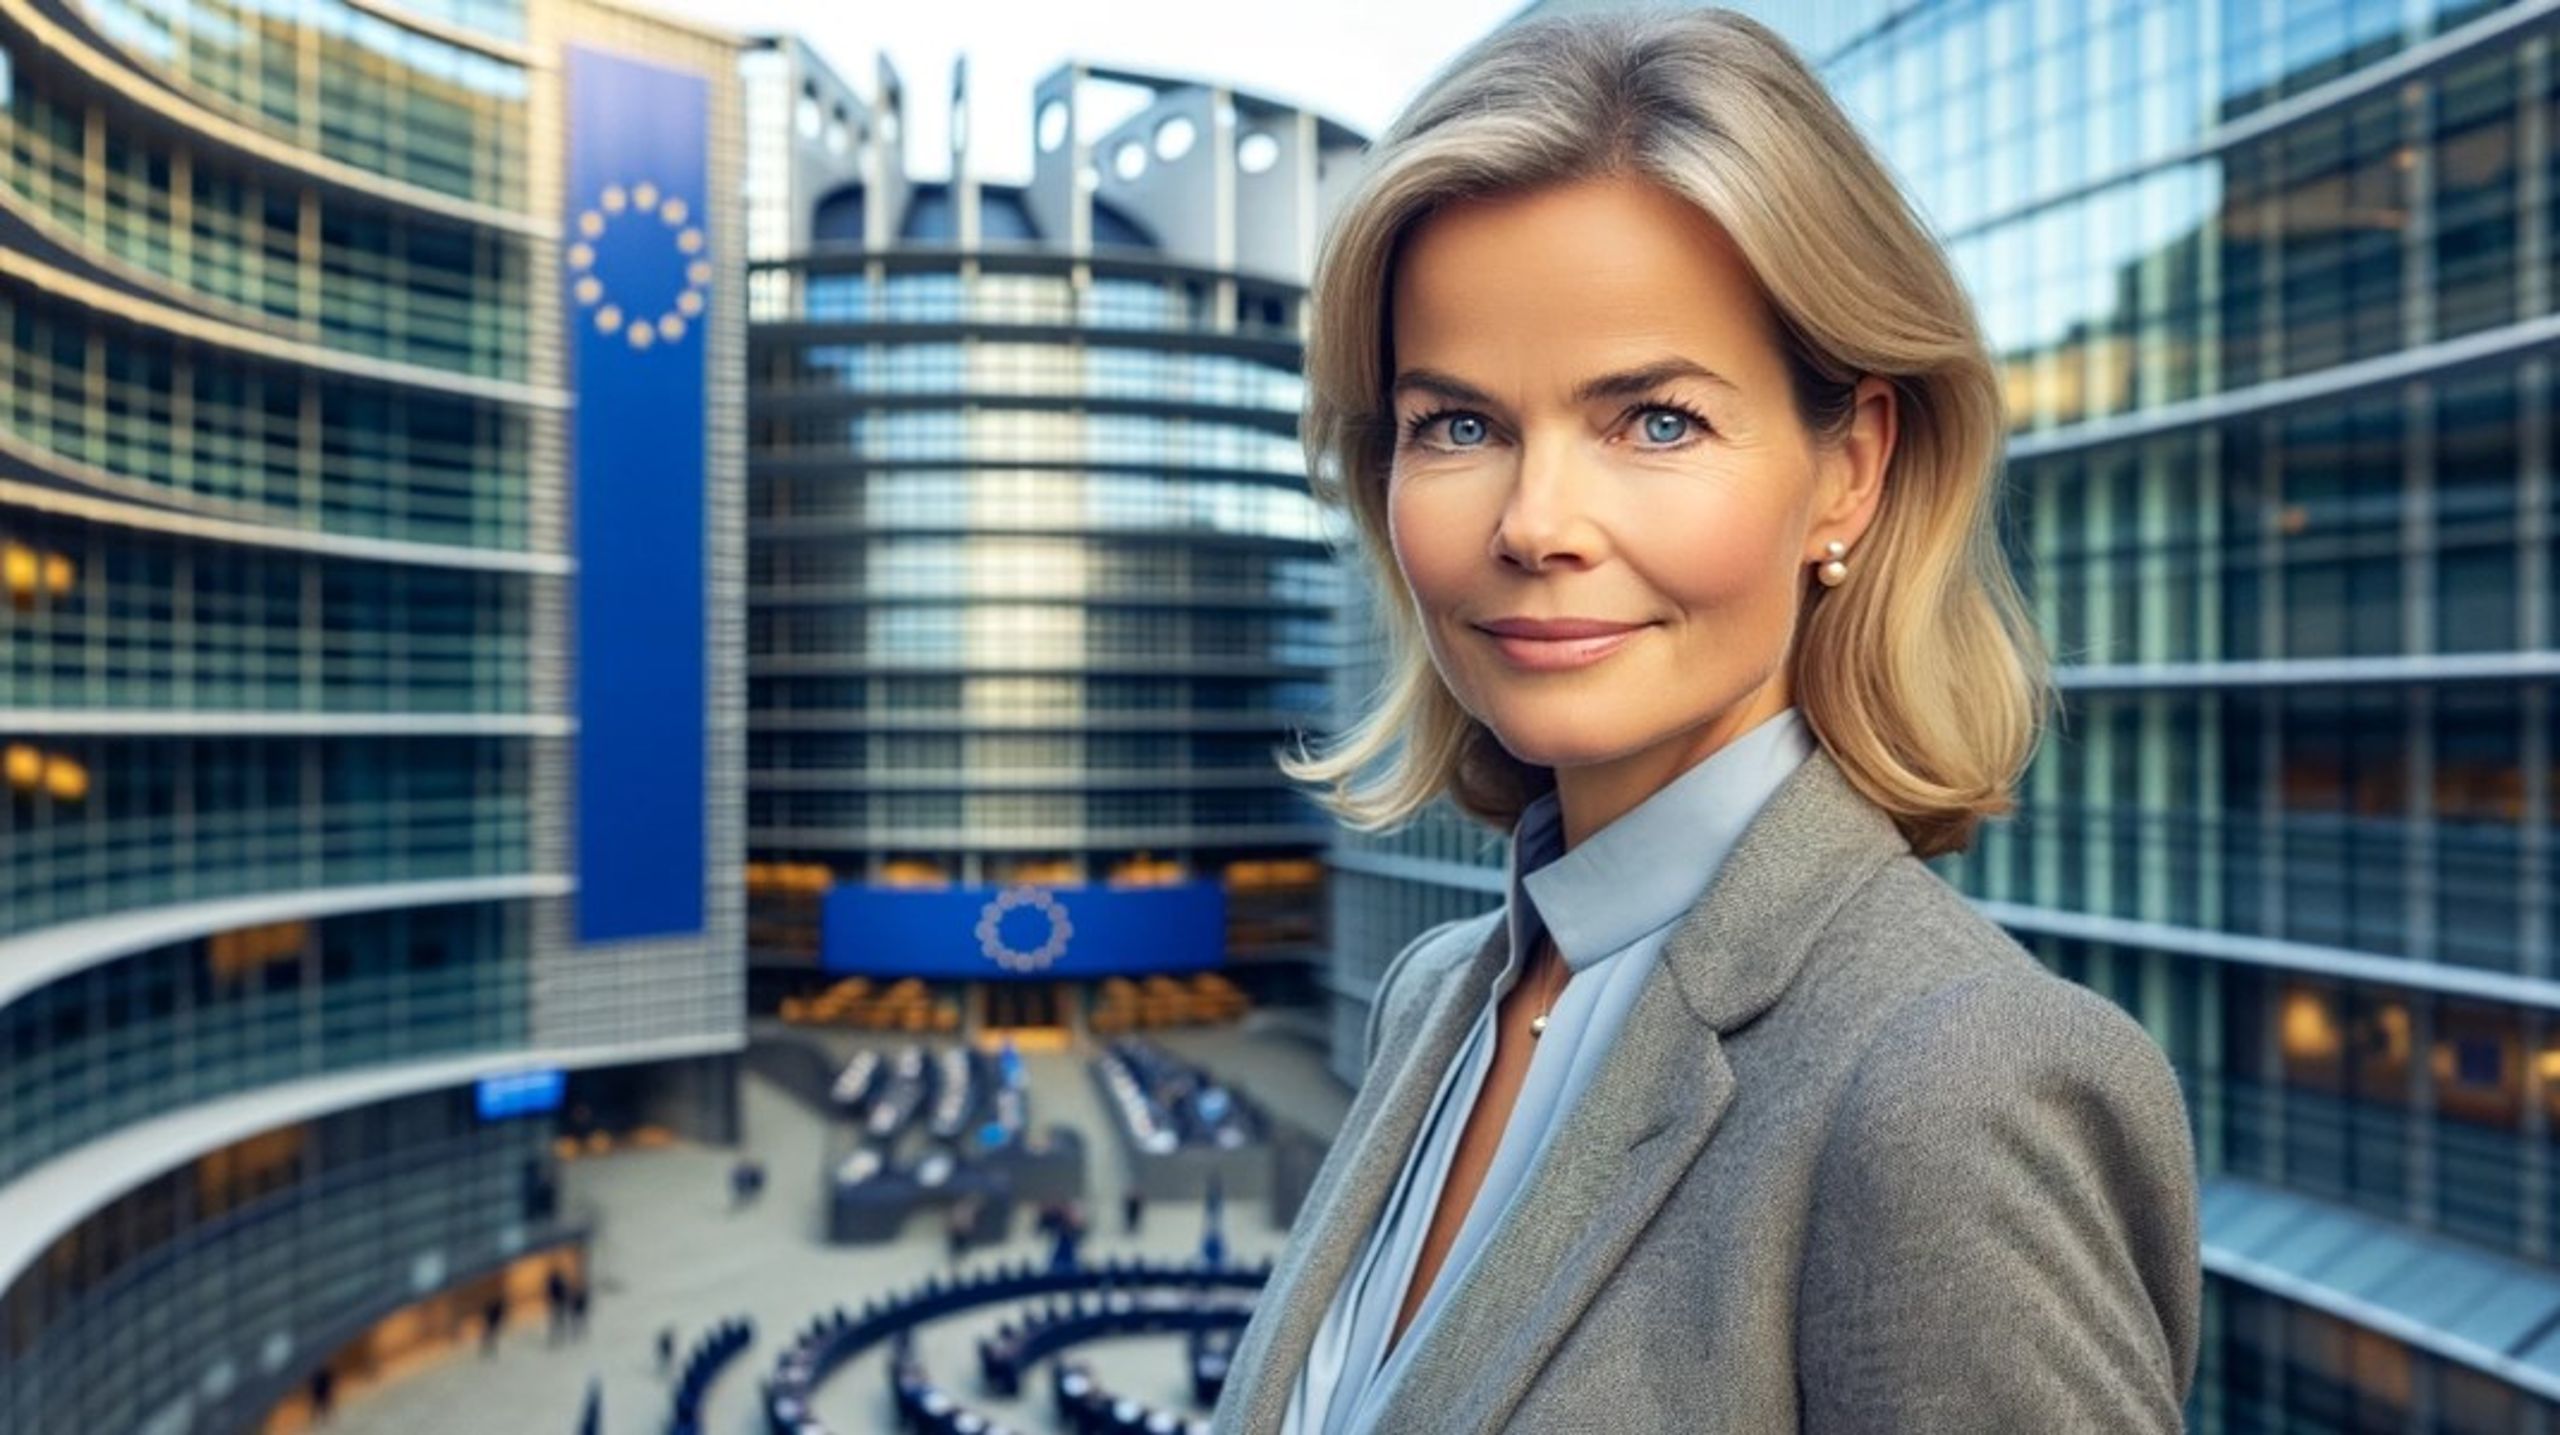 Är det så här en genomsnittlig EU-kandidat ser ut? Bilden är AI-genererad.